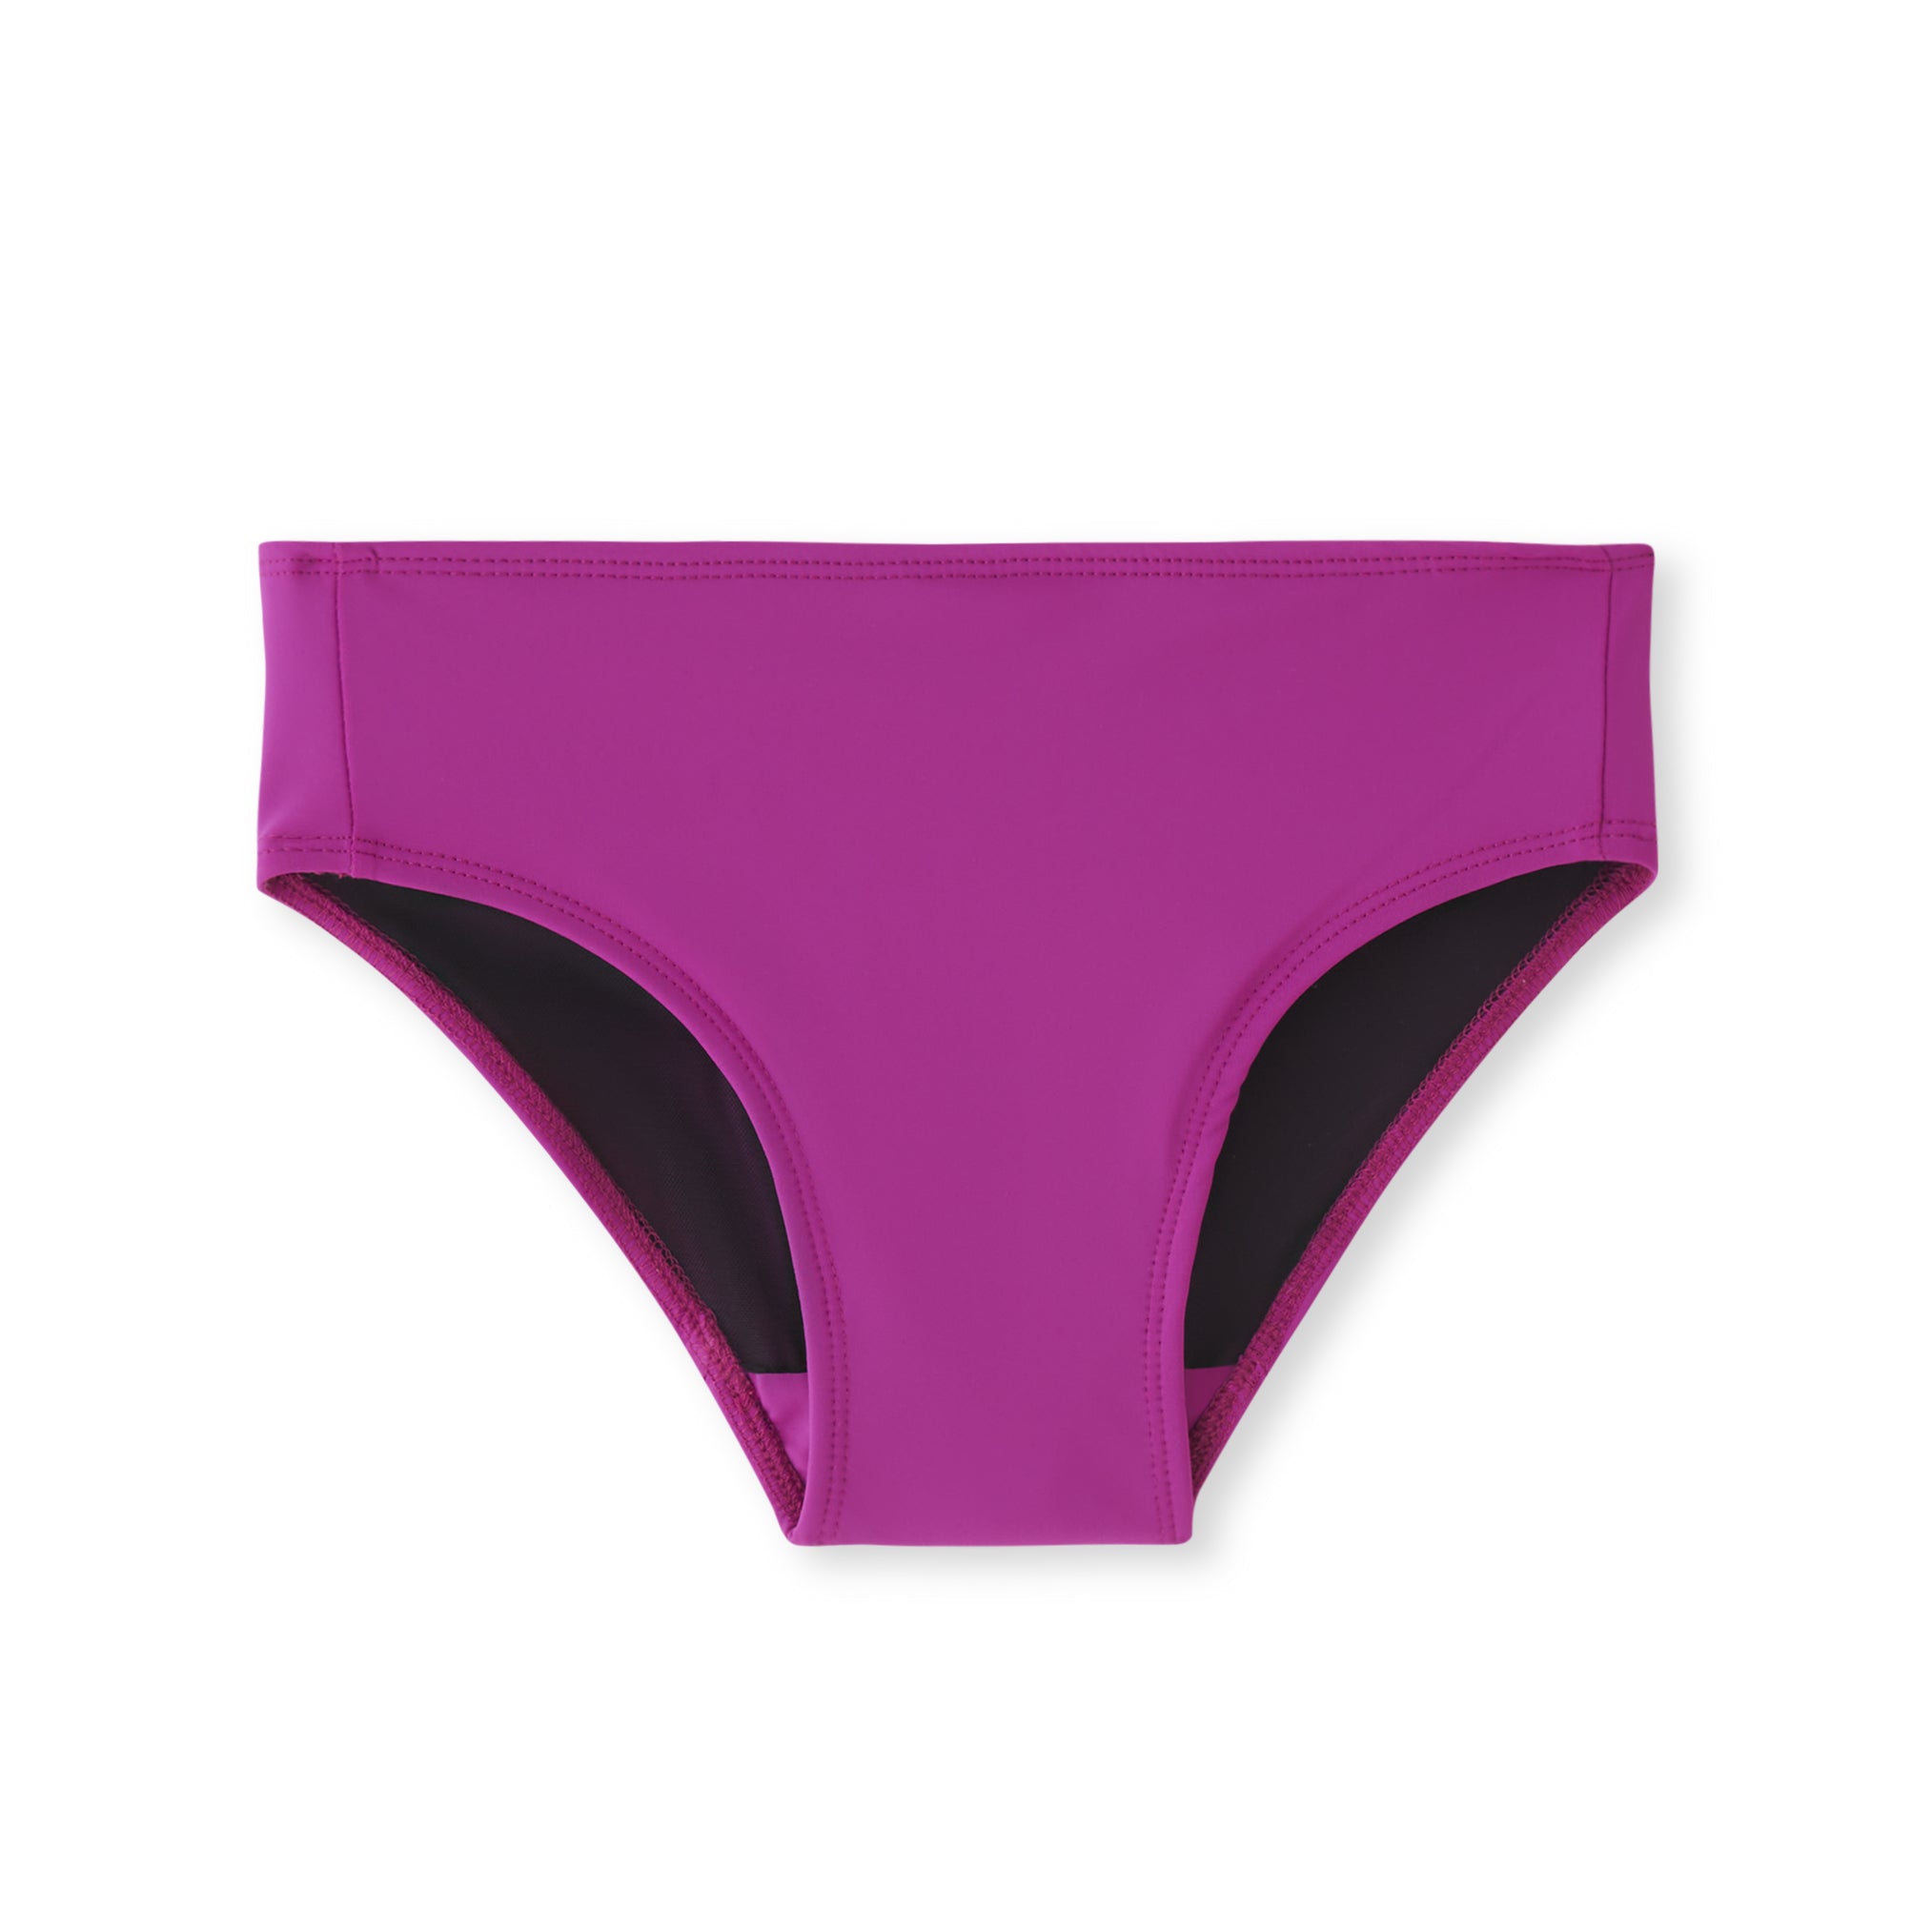 New Purple Bra panties set size 32 A / XS sexy naughty tight FREE